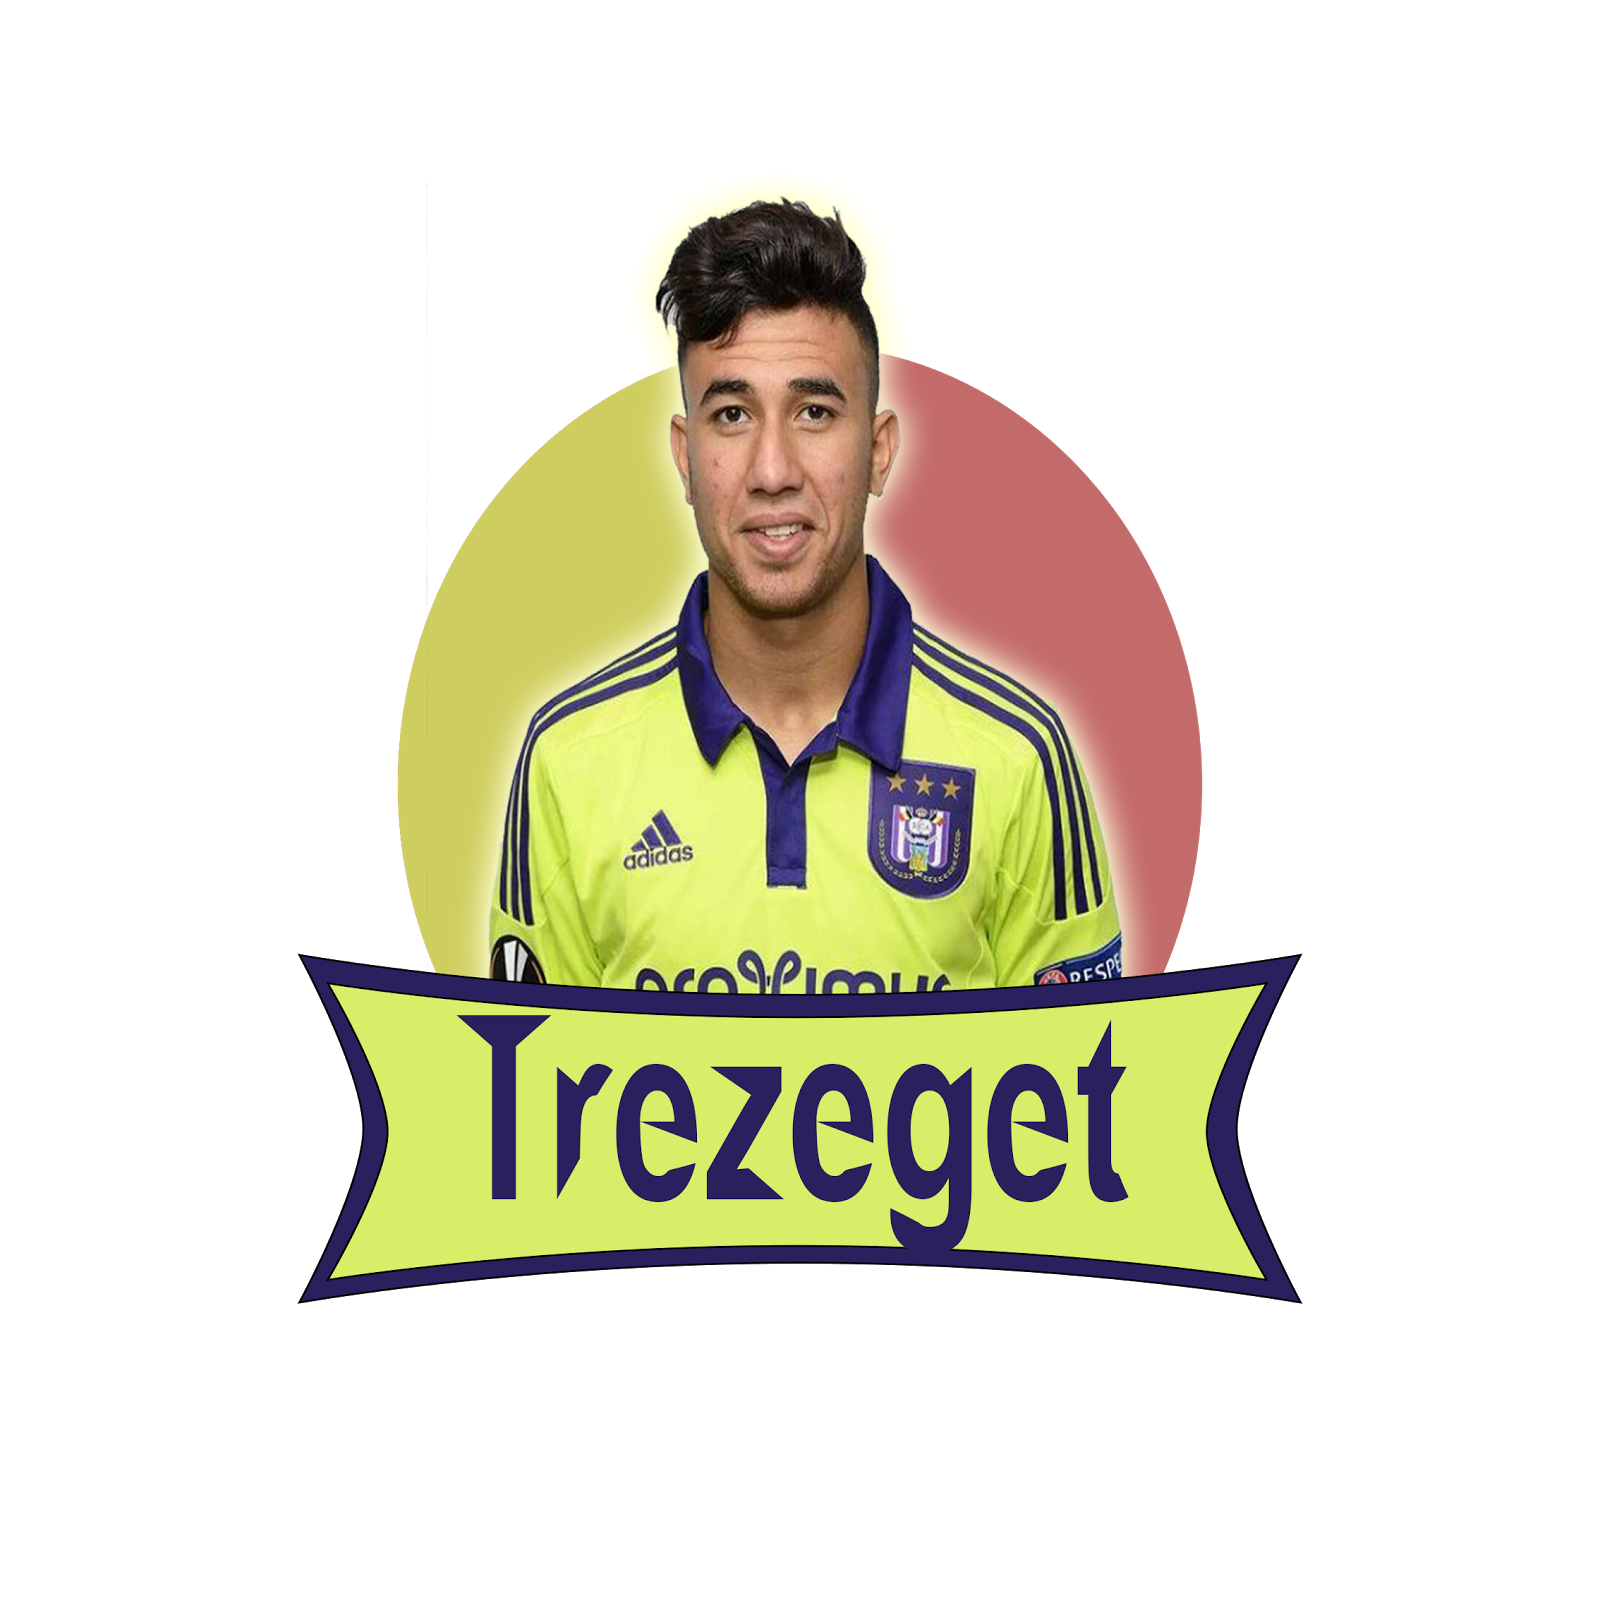 trizegeh news